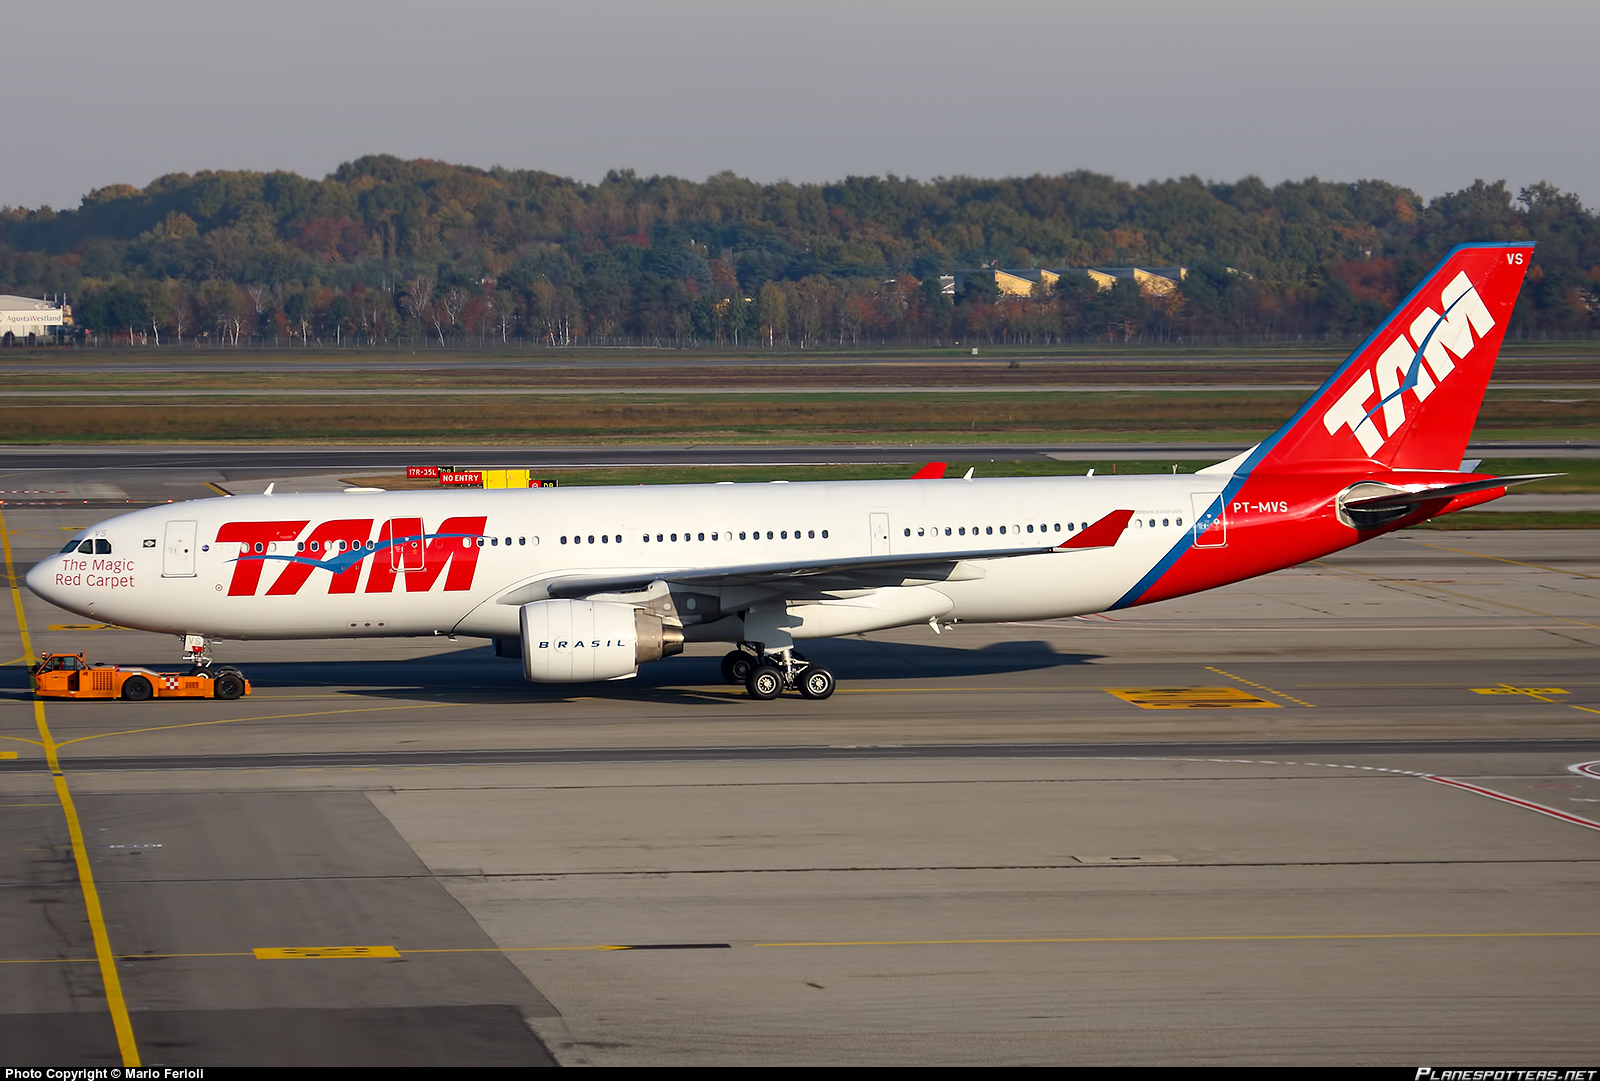 天馬航空公司空中客車A330-200